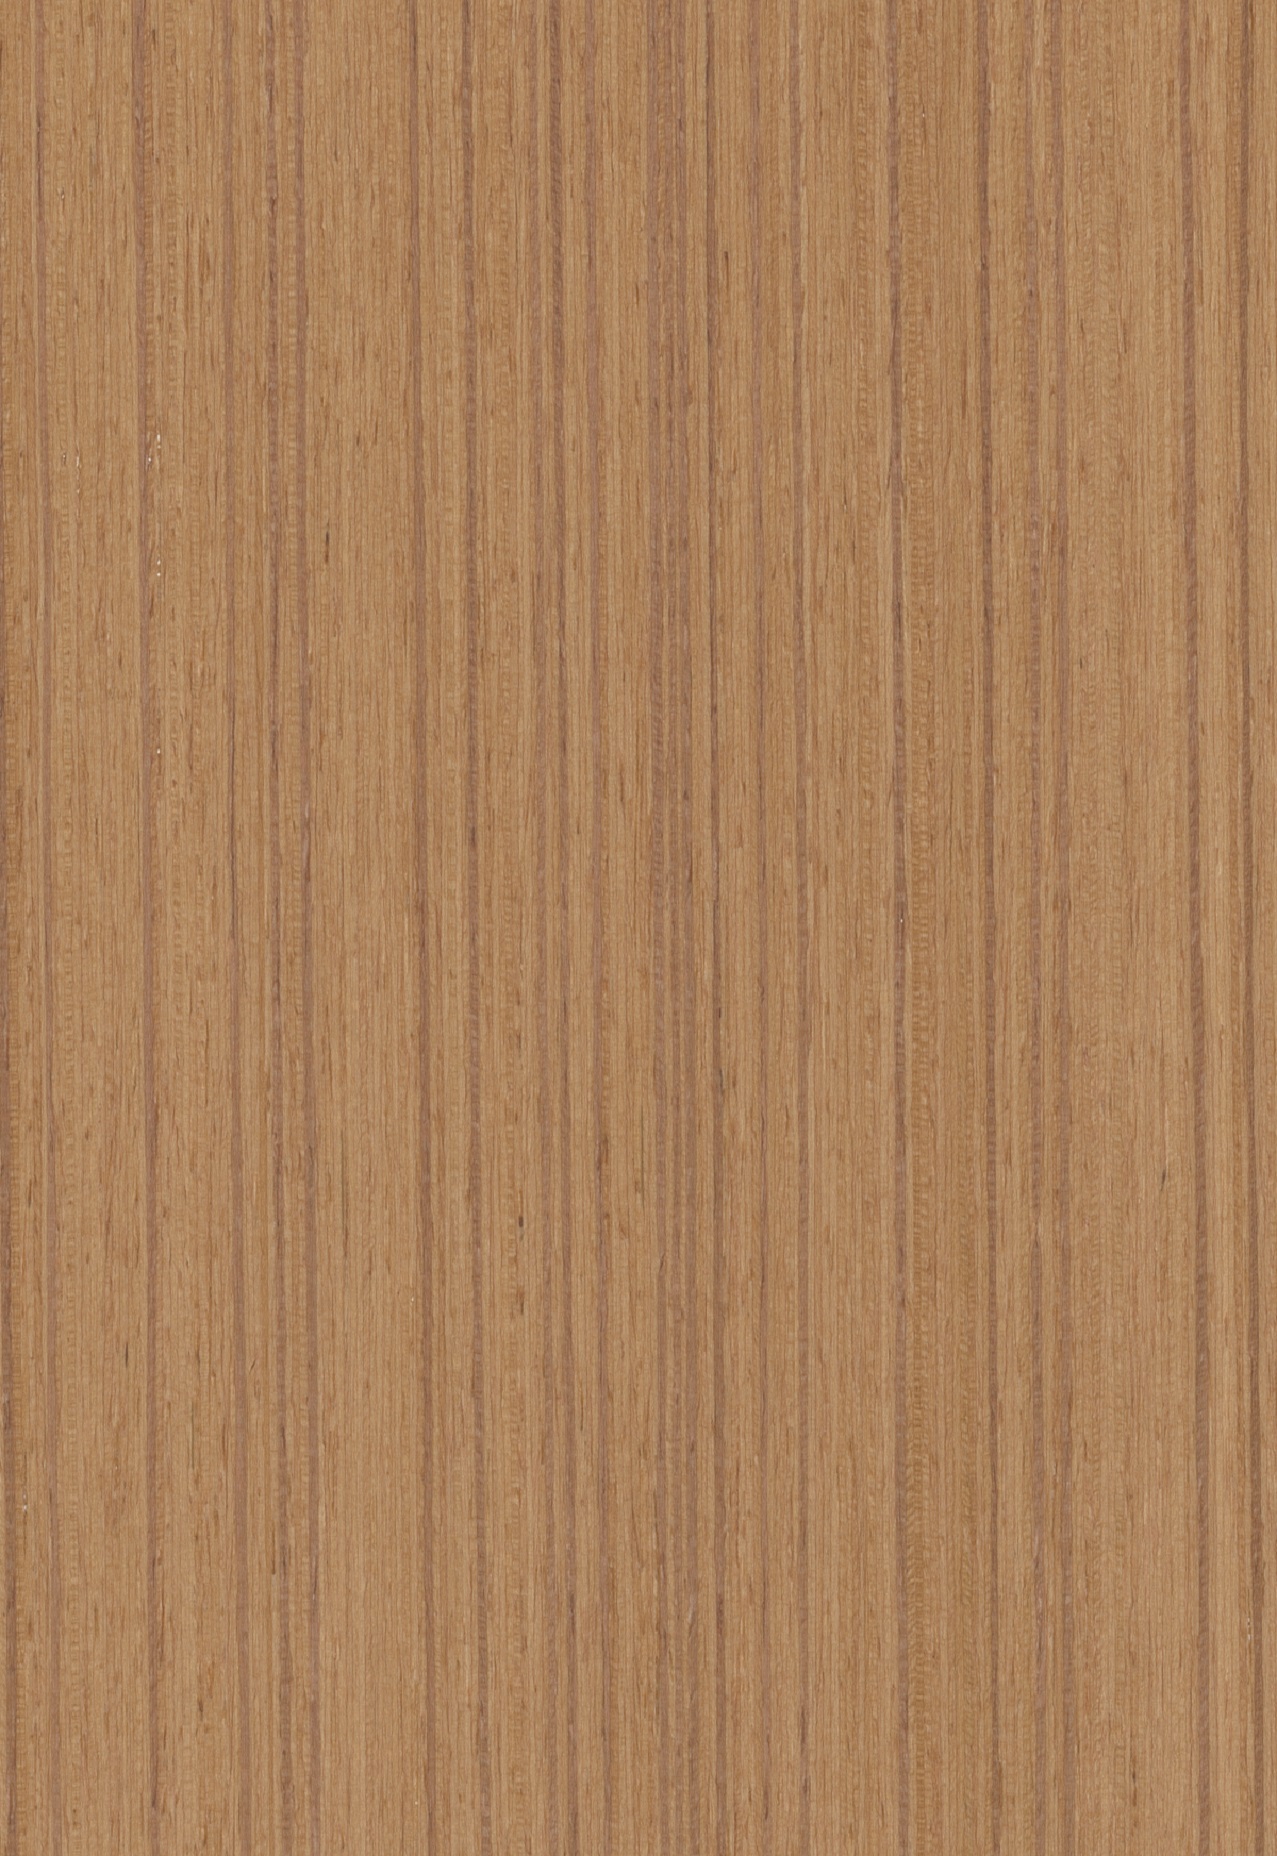 k6246柚木直纹-高品质柳桉芯夹板基材 科技木皮 uv涂料环保涂装